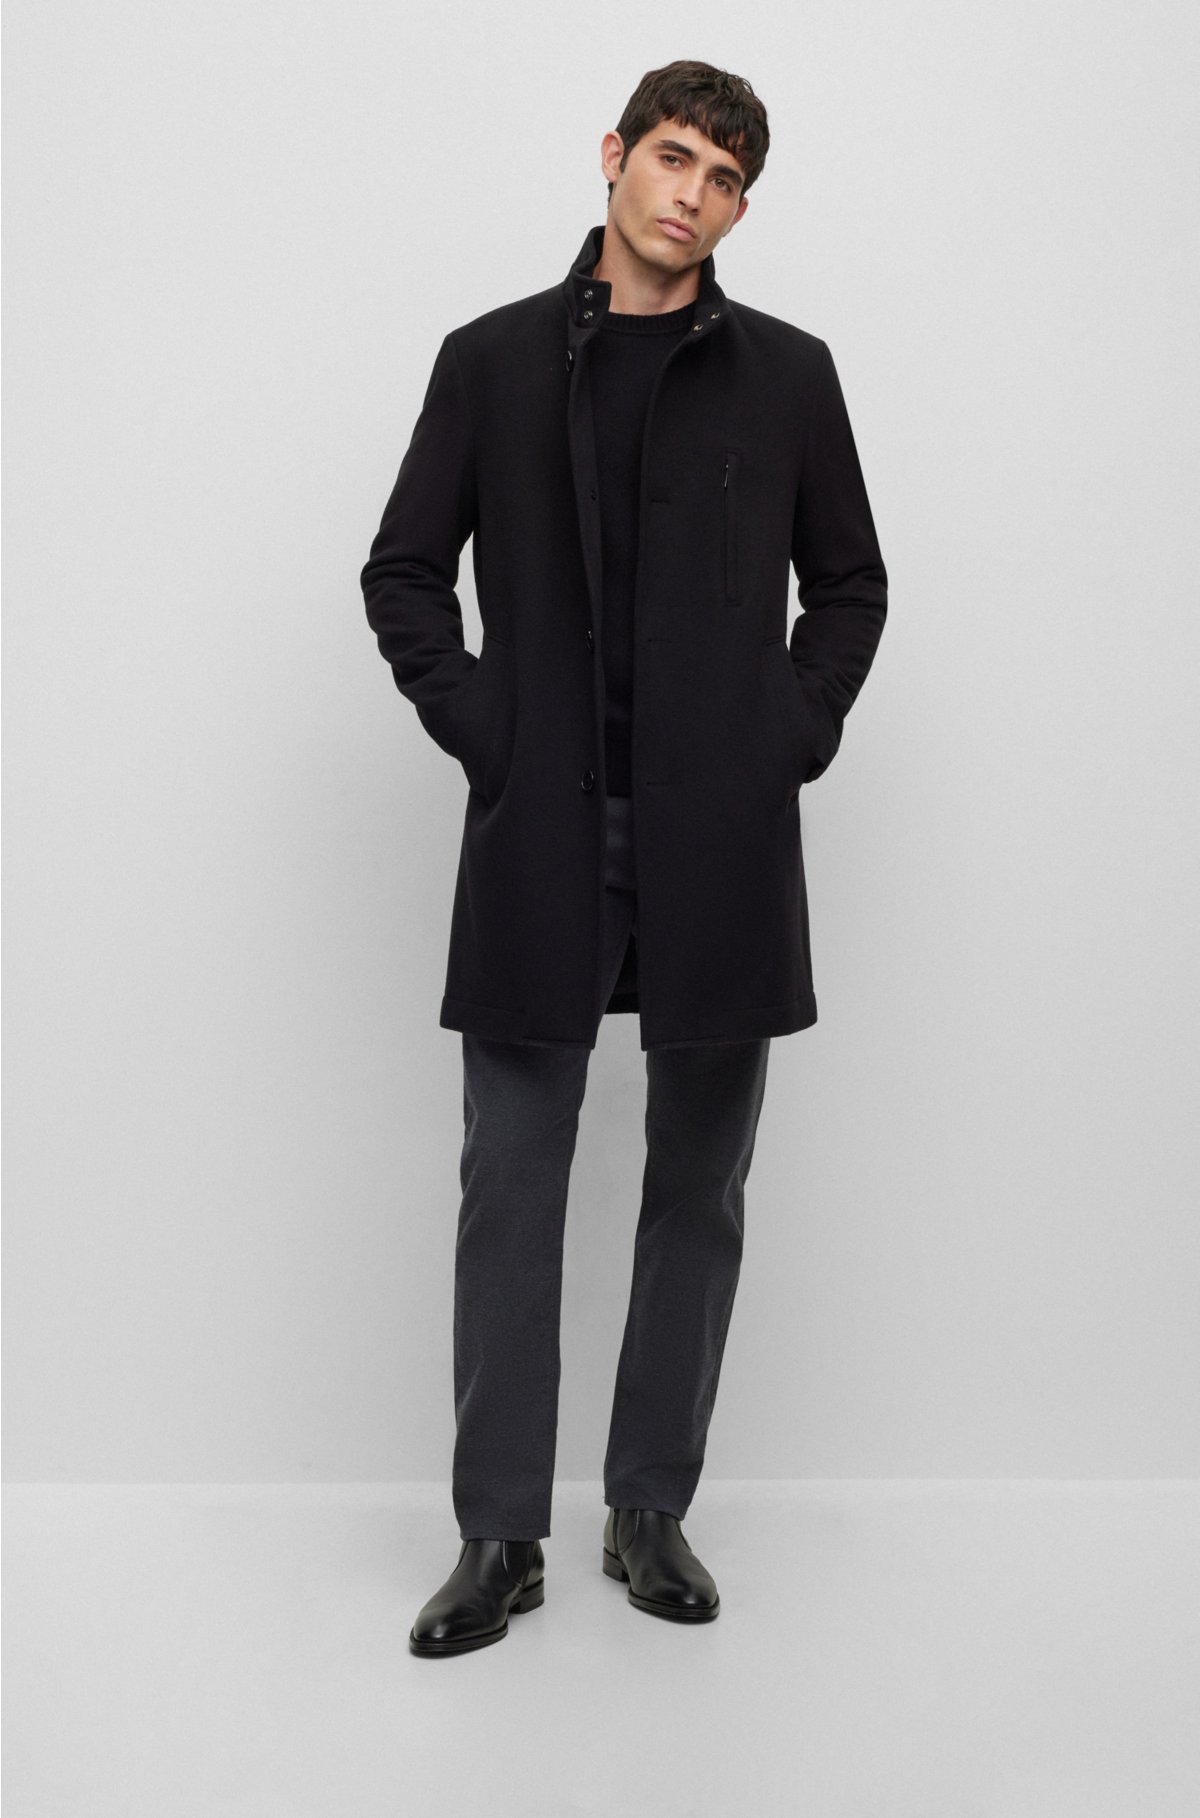 Slim-fit coat in a wool blend, Black